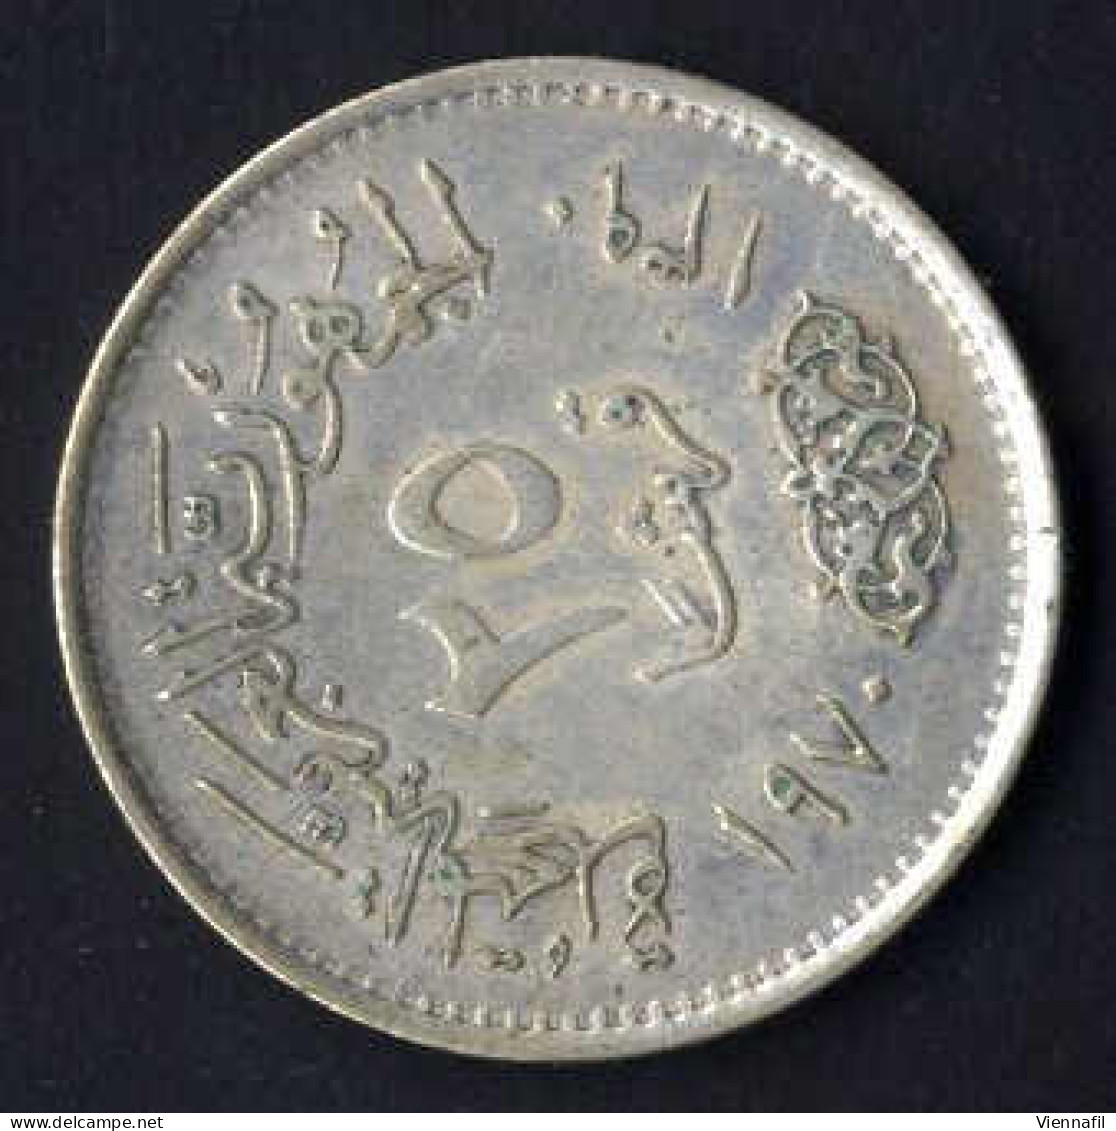 25 Piaster Silber, J1390AH 1970 Nasser, KM 422, Y 134, Vorzüglich - Egitto